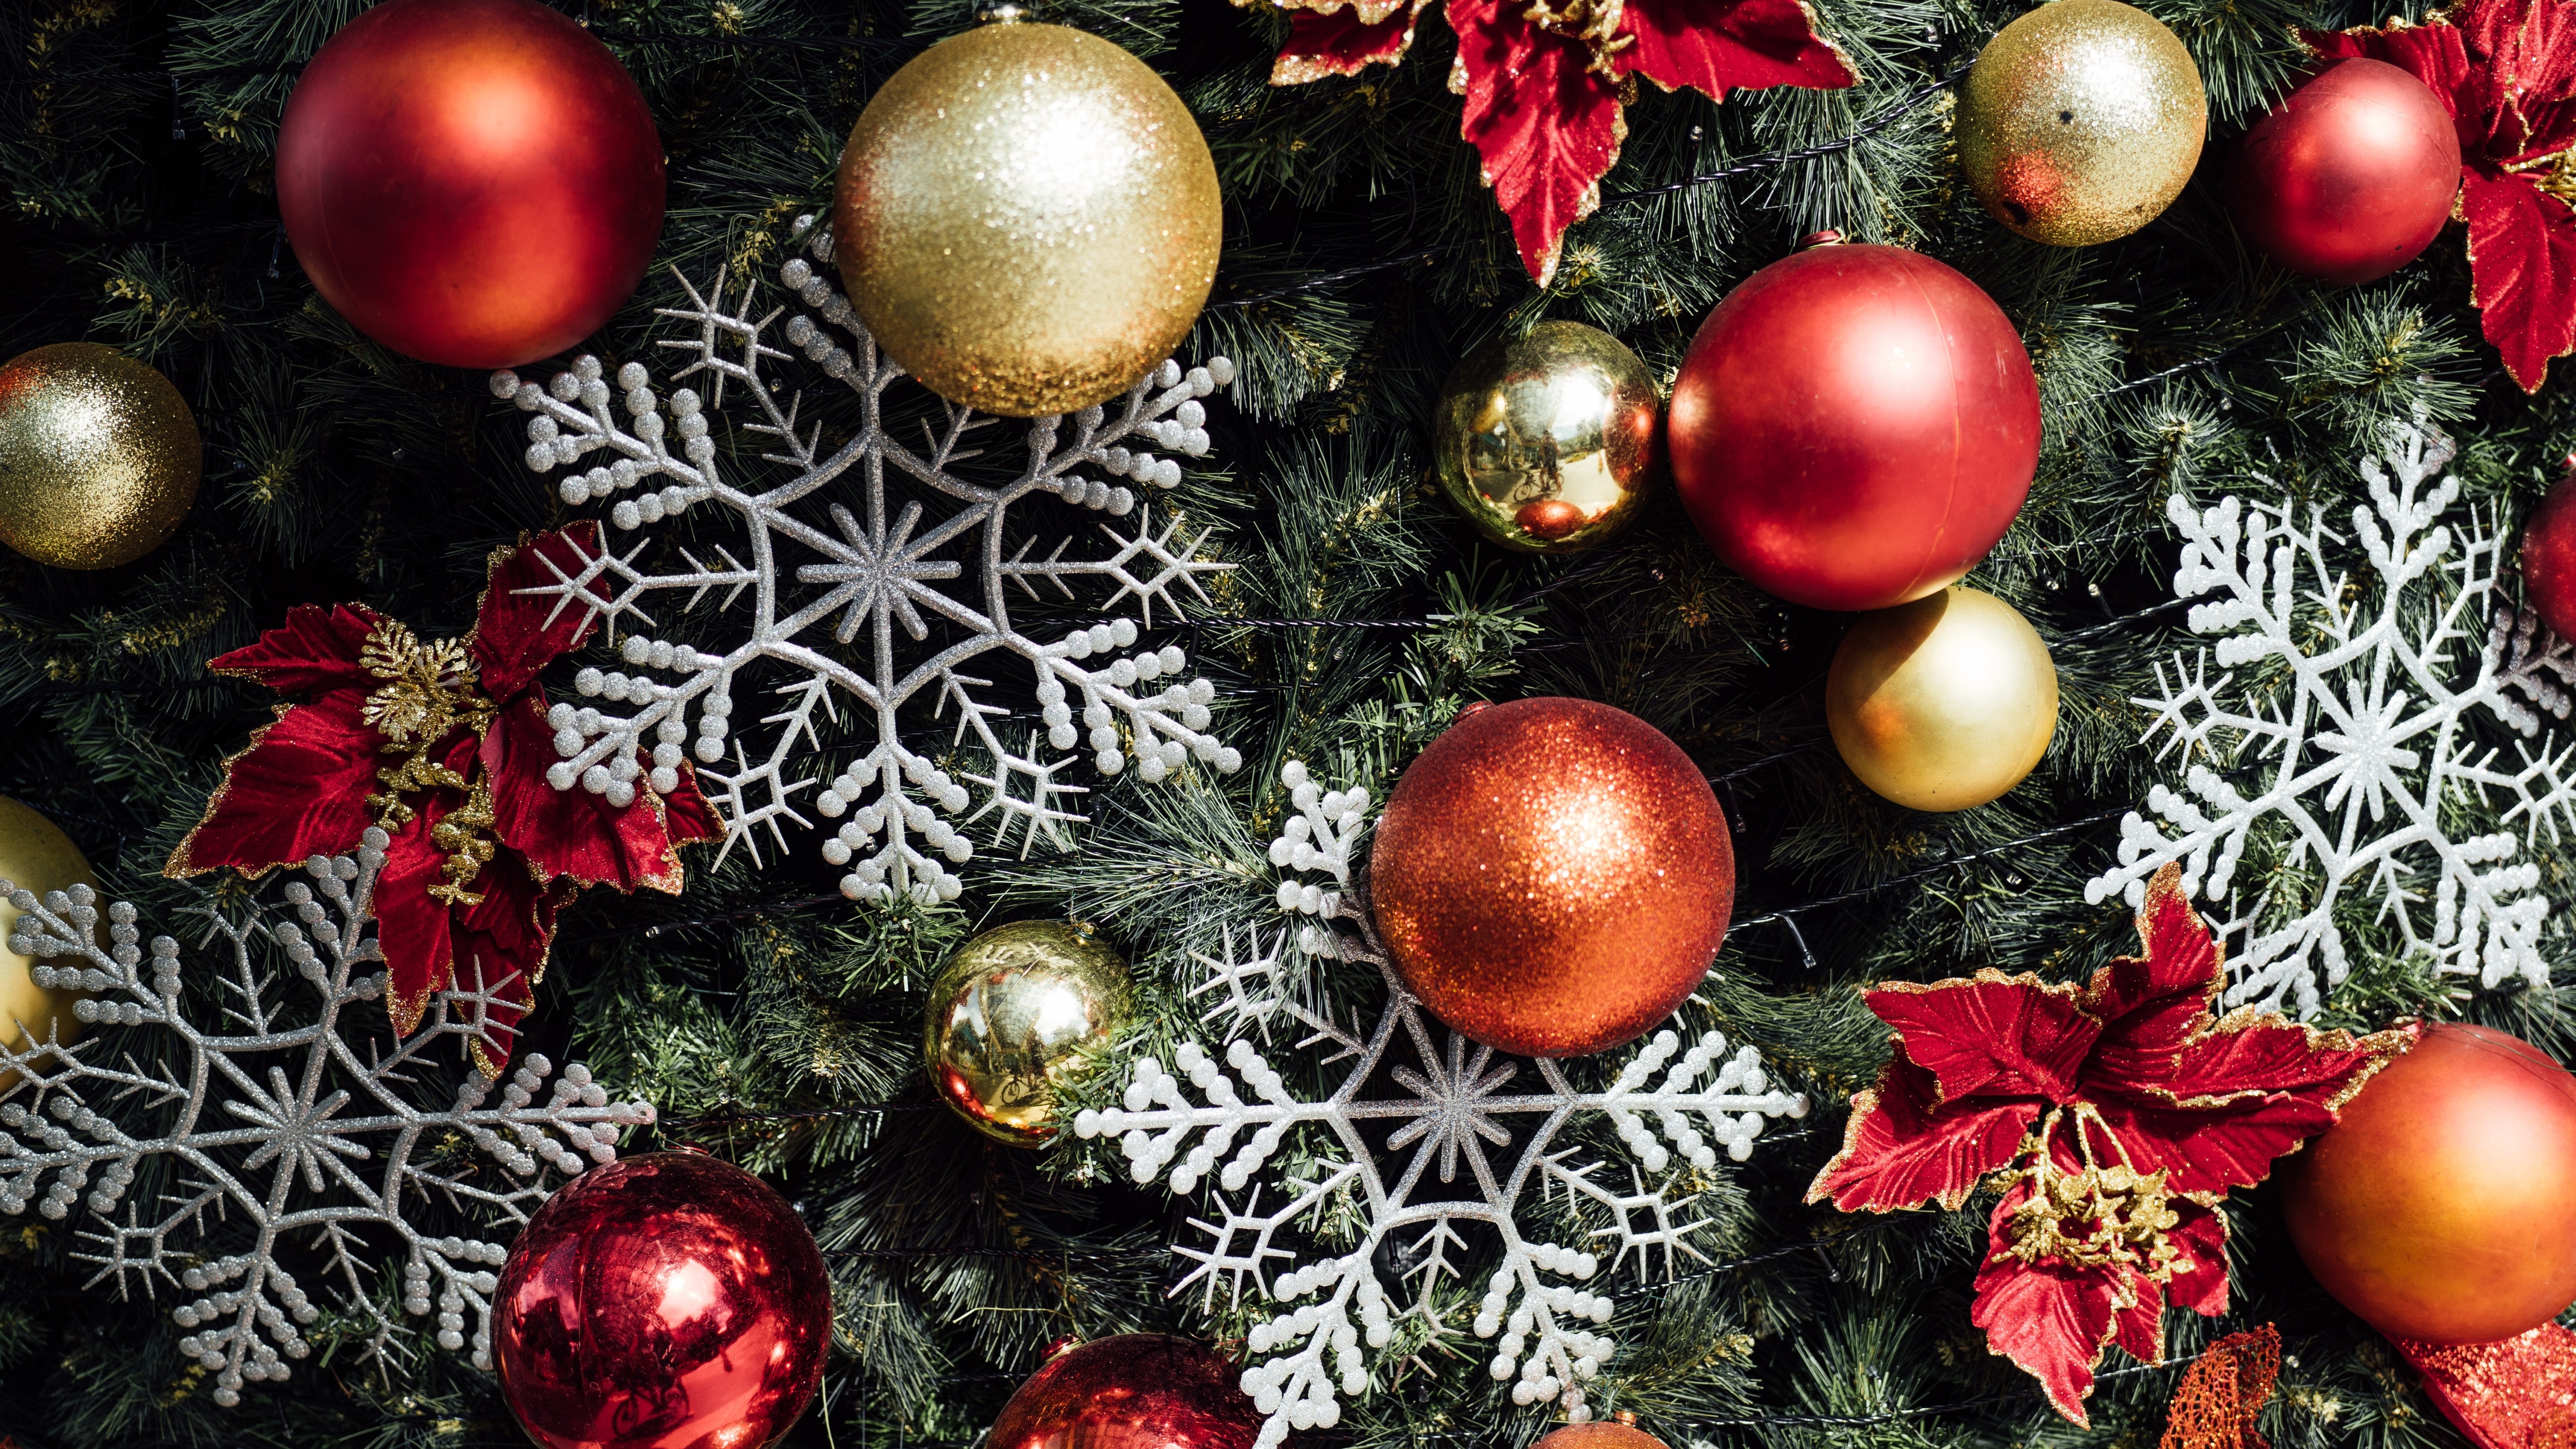 Trang trí đèn Noel của bạn sẽ trở nên thật sự nổi bật với hình ảnh trang trí Noel chất lượng cao 4K. Với bầu không khí mùa giáng sinh đầy ấm áp và tình cảm, hình ảnh này sẽ khiến bạn thích thú với việc trang trí nhà cửa cho mùa lễ hội sắp tới.